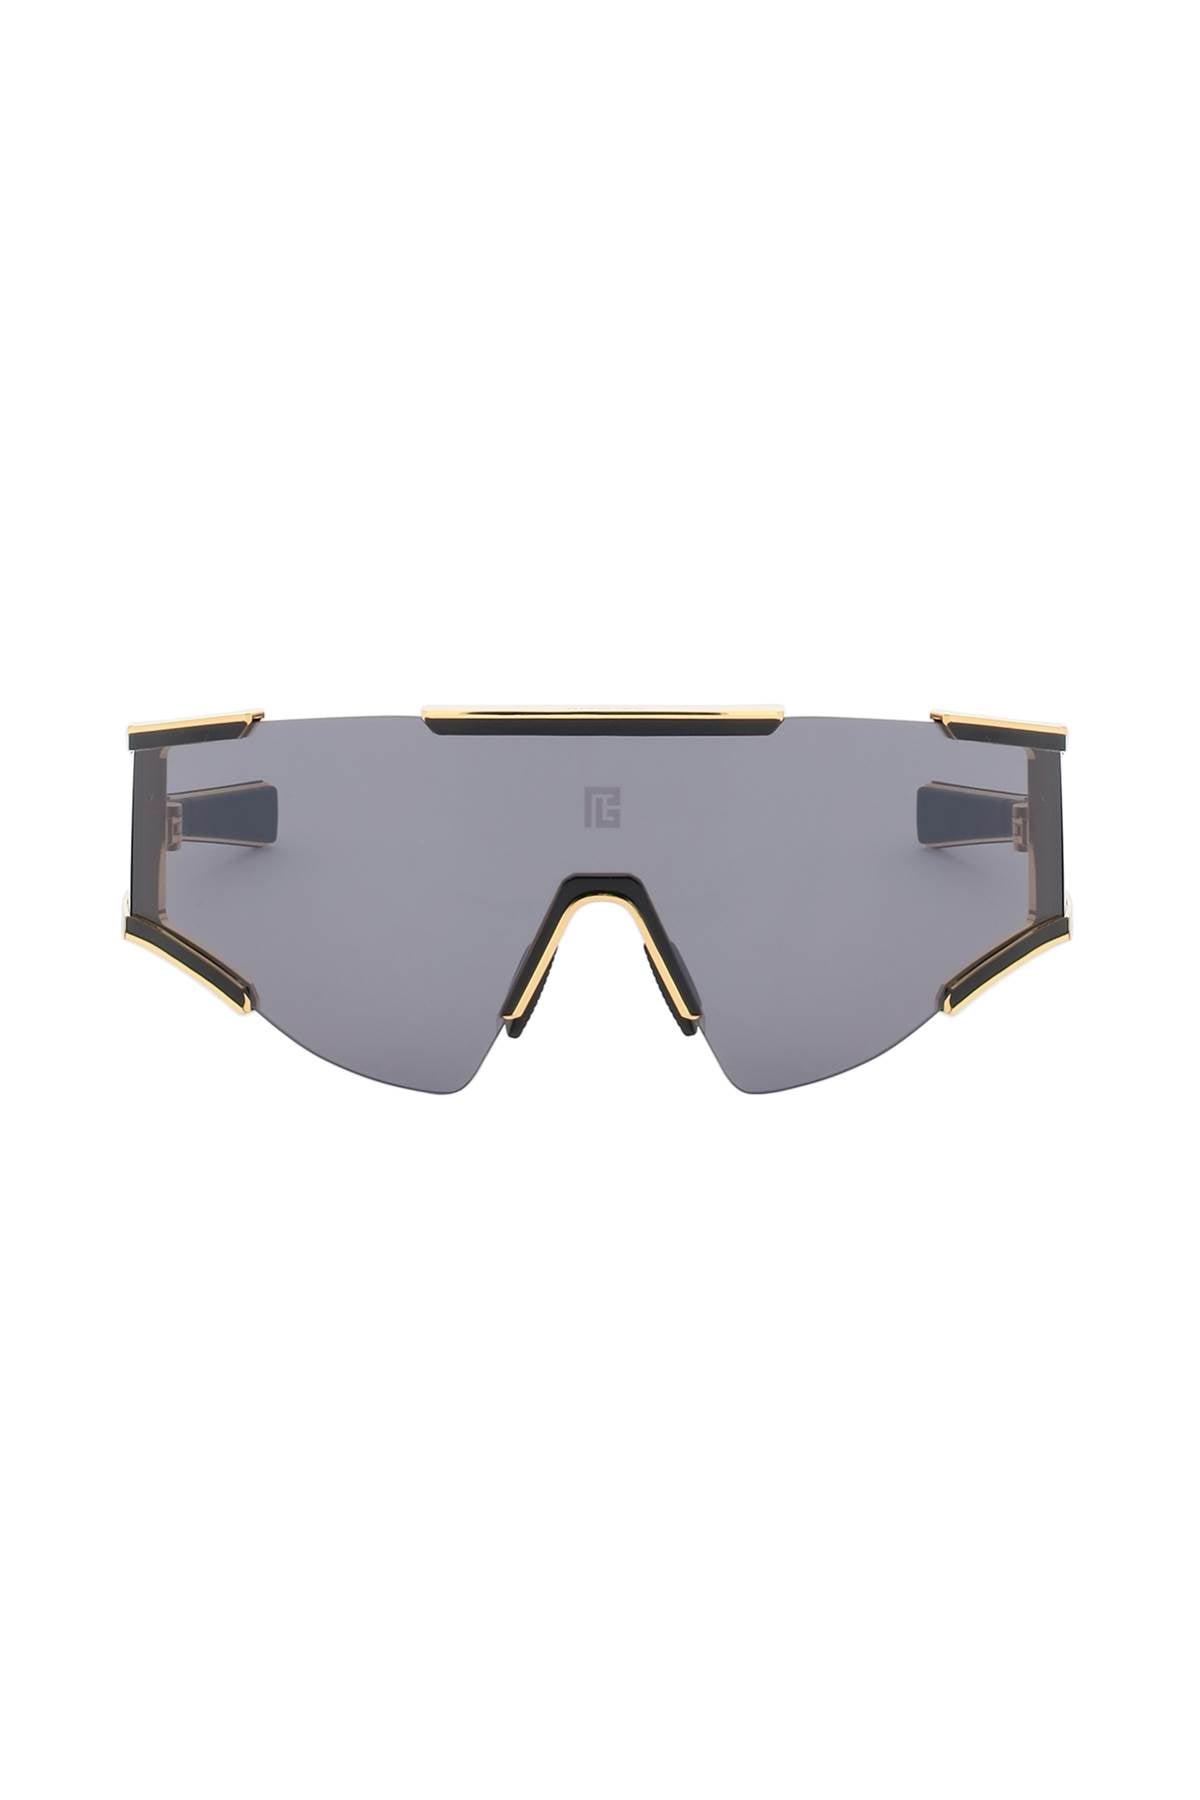 نظارات شمسية نسائية بتصميم مميز ذات نظارة مستطيلة وتفاصيل باللون الذهبي